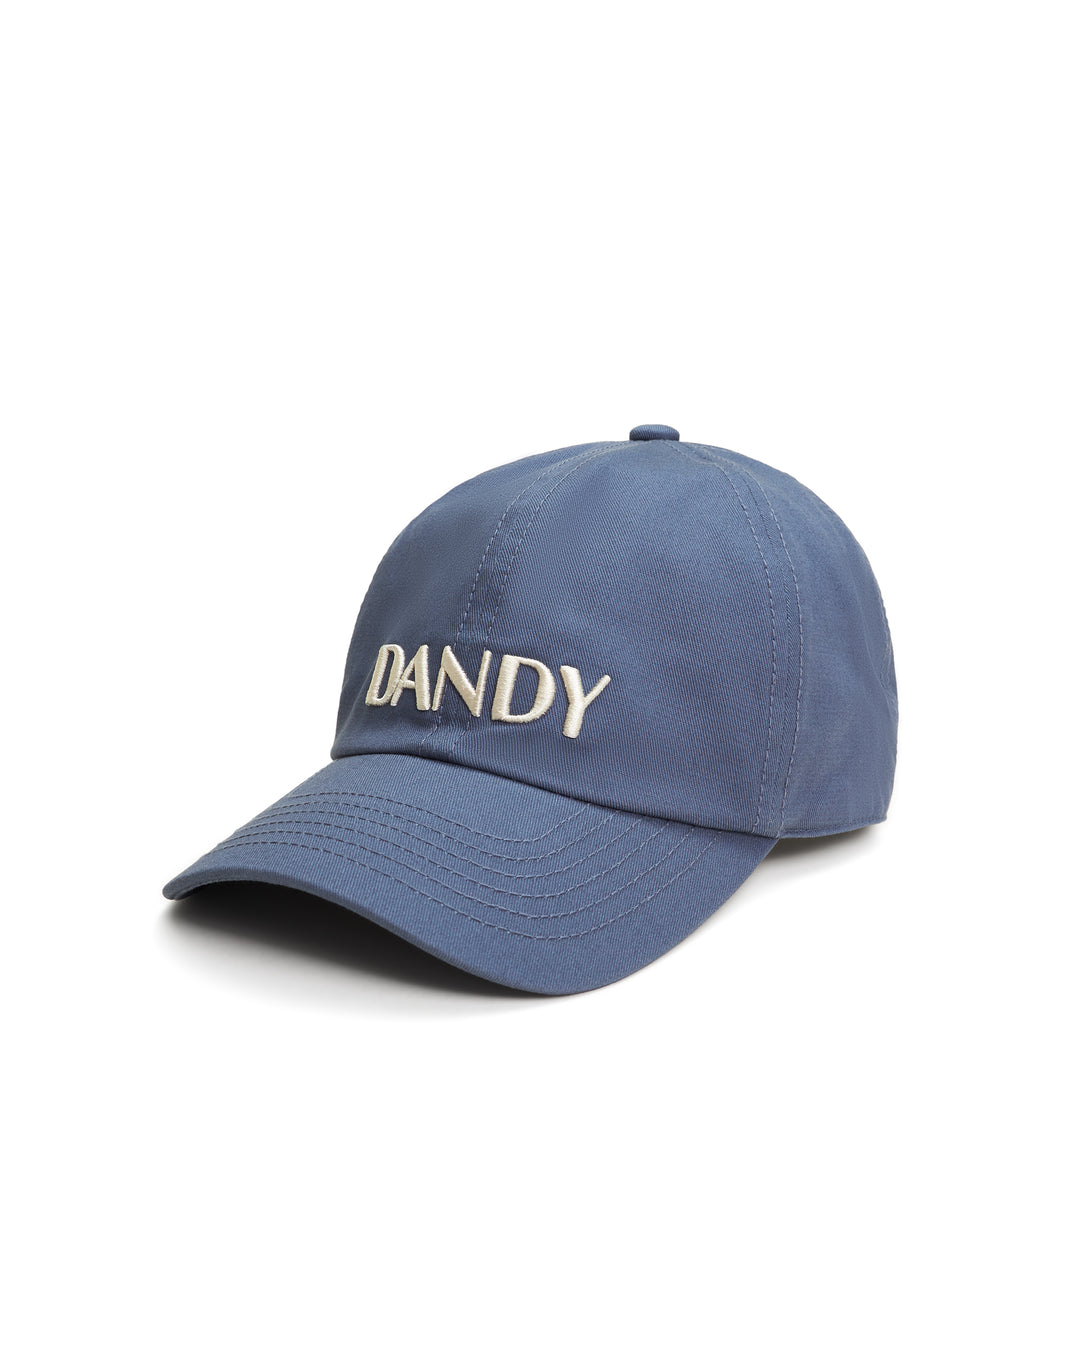 A blue Dandy Icon Hat - Moontide by Dandy Del Mar.